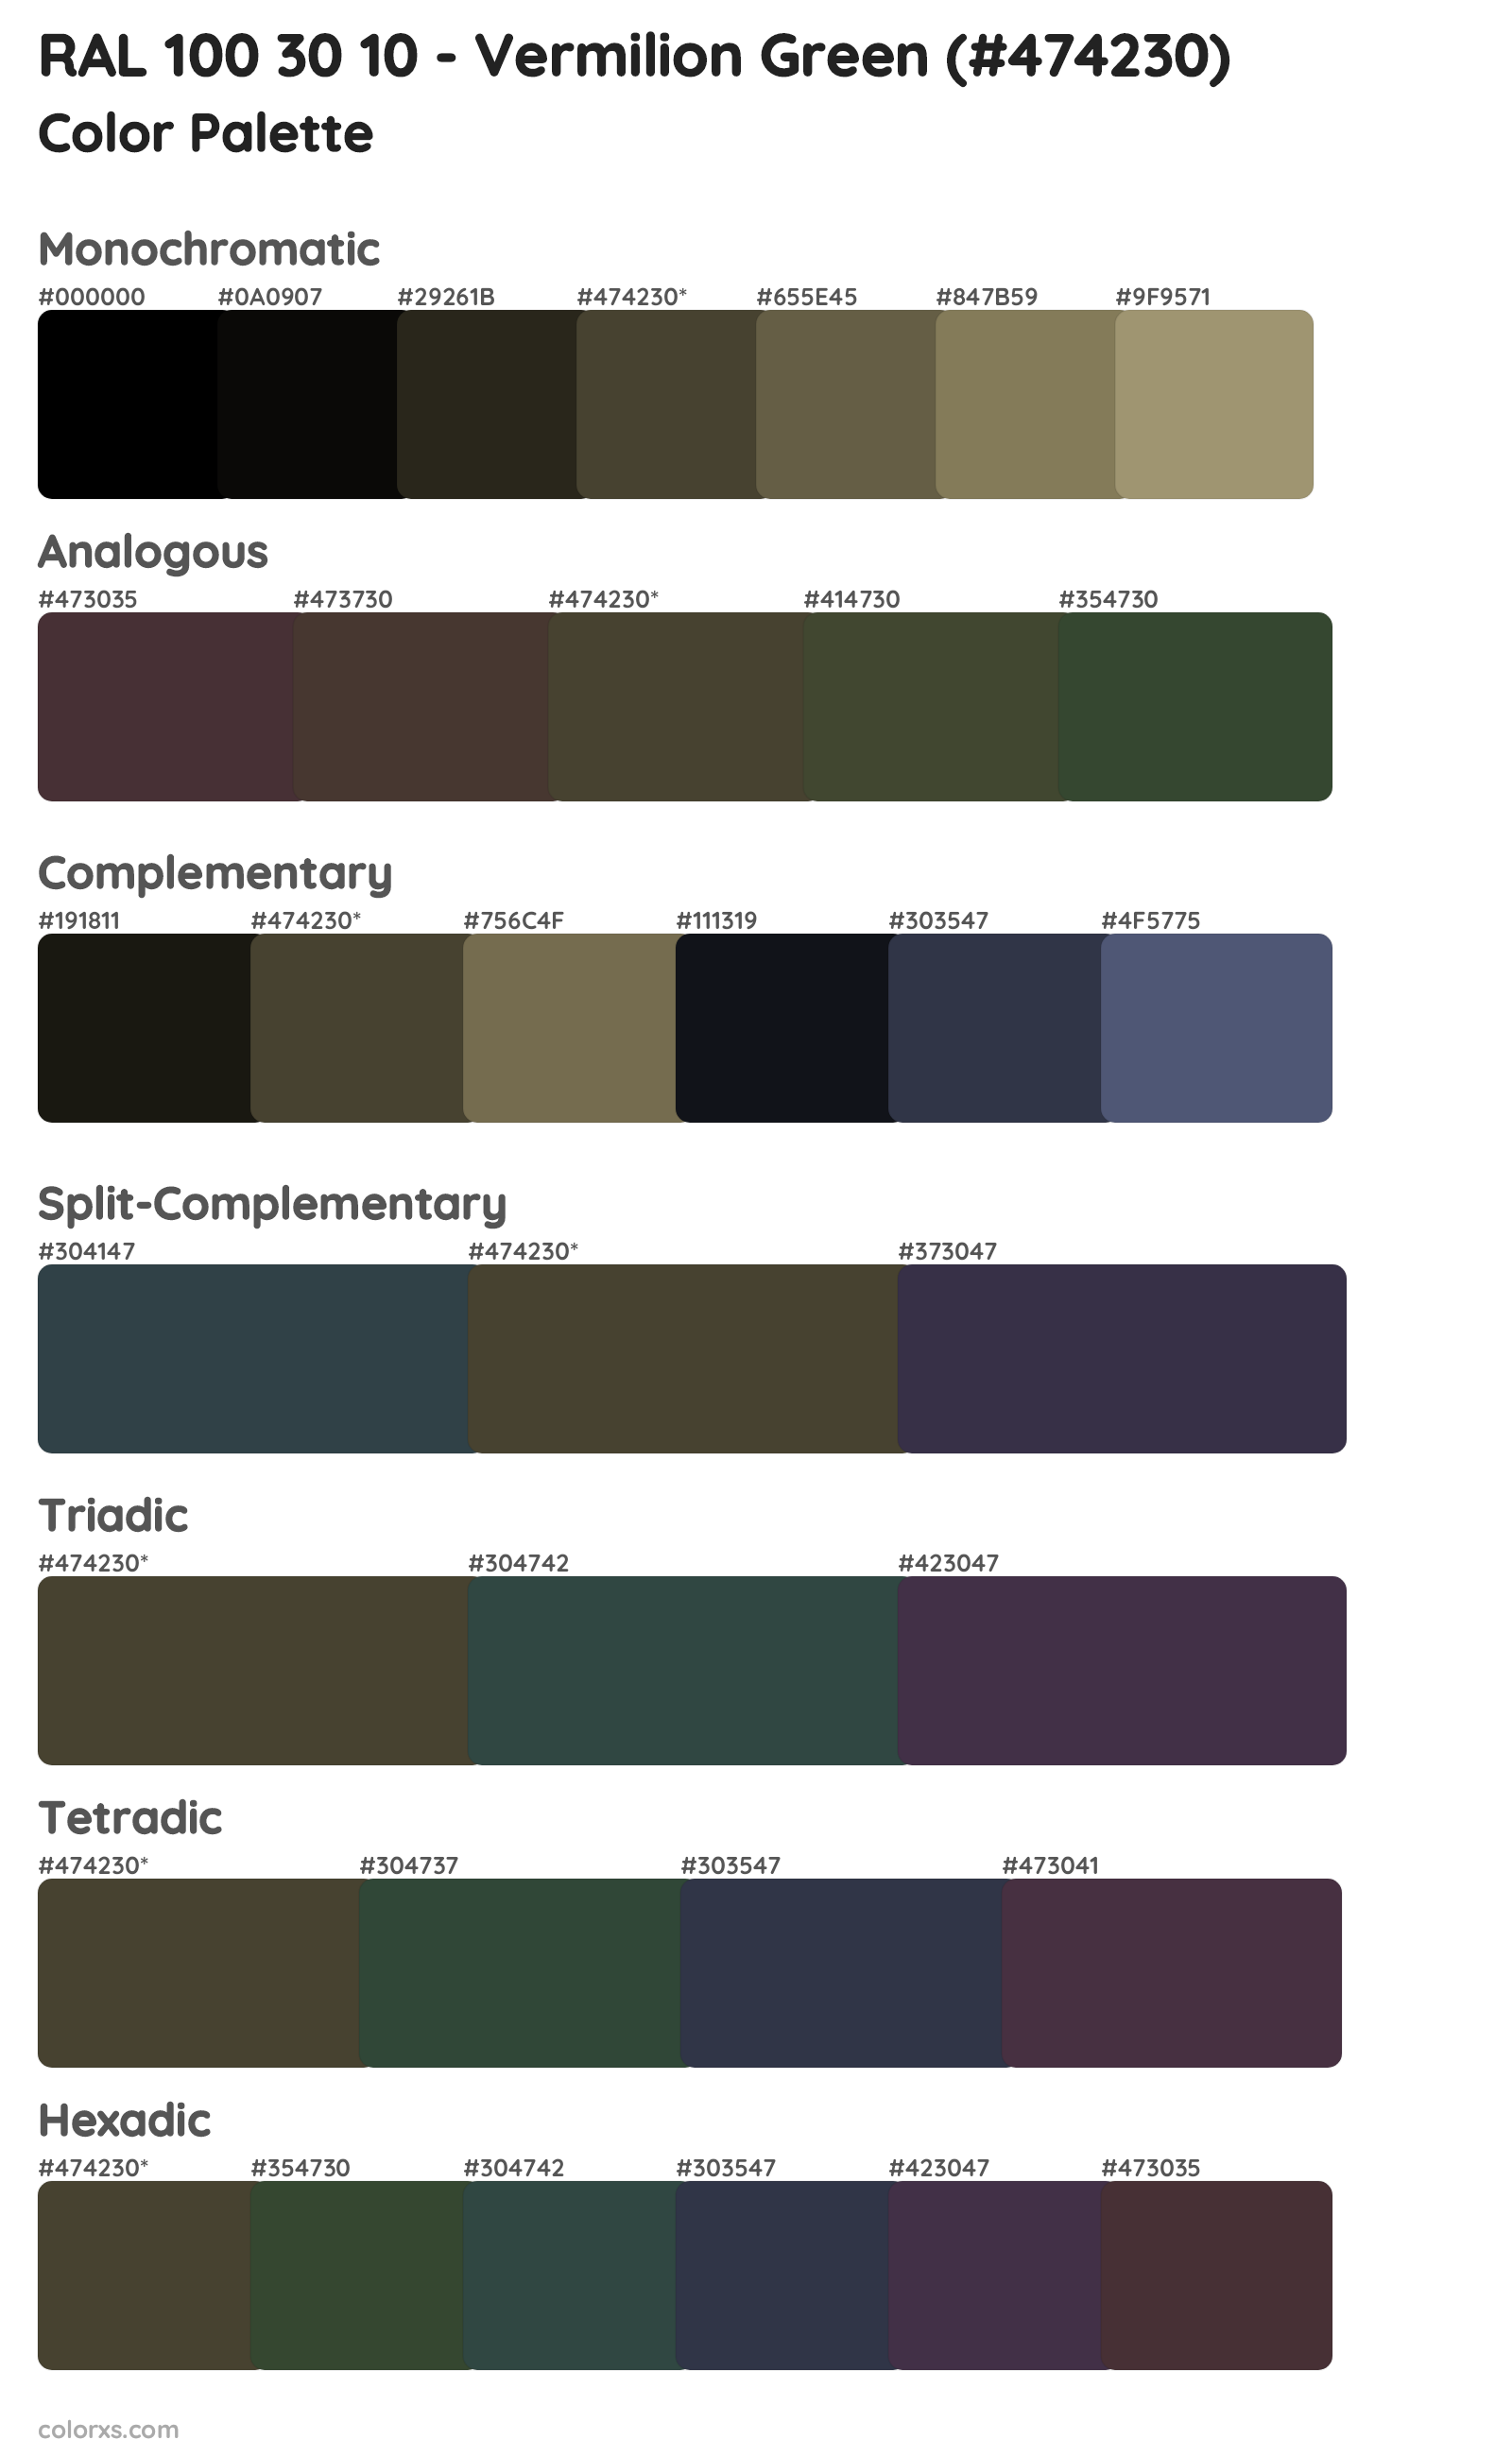 RAL 100 30 10 - Vermilion Green Color Scheme Palettes